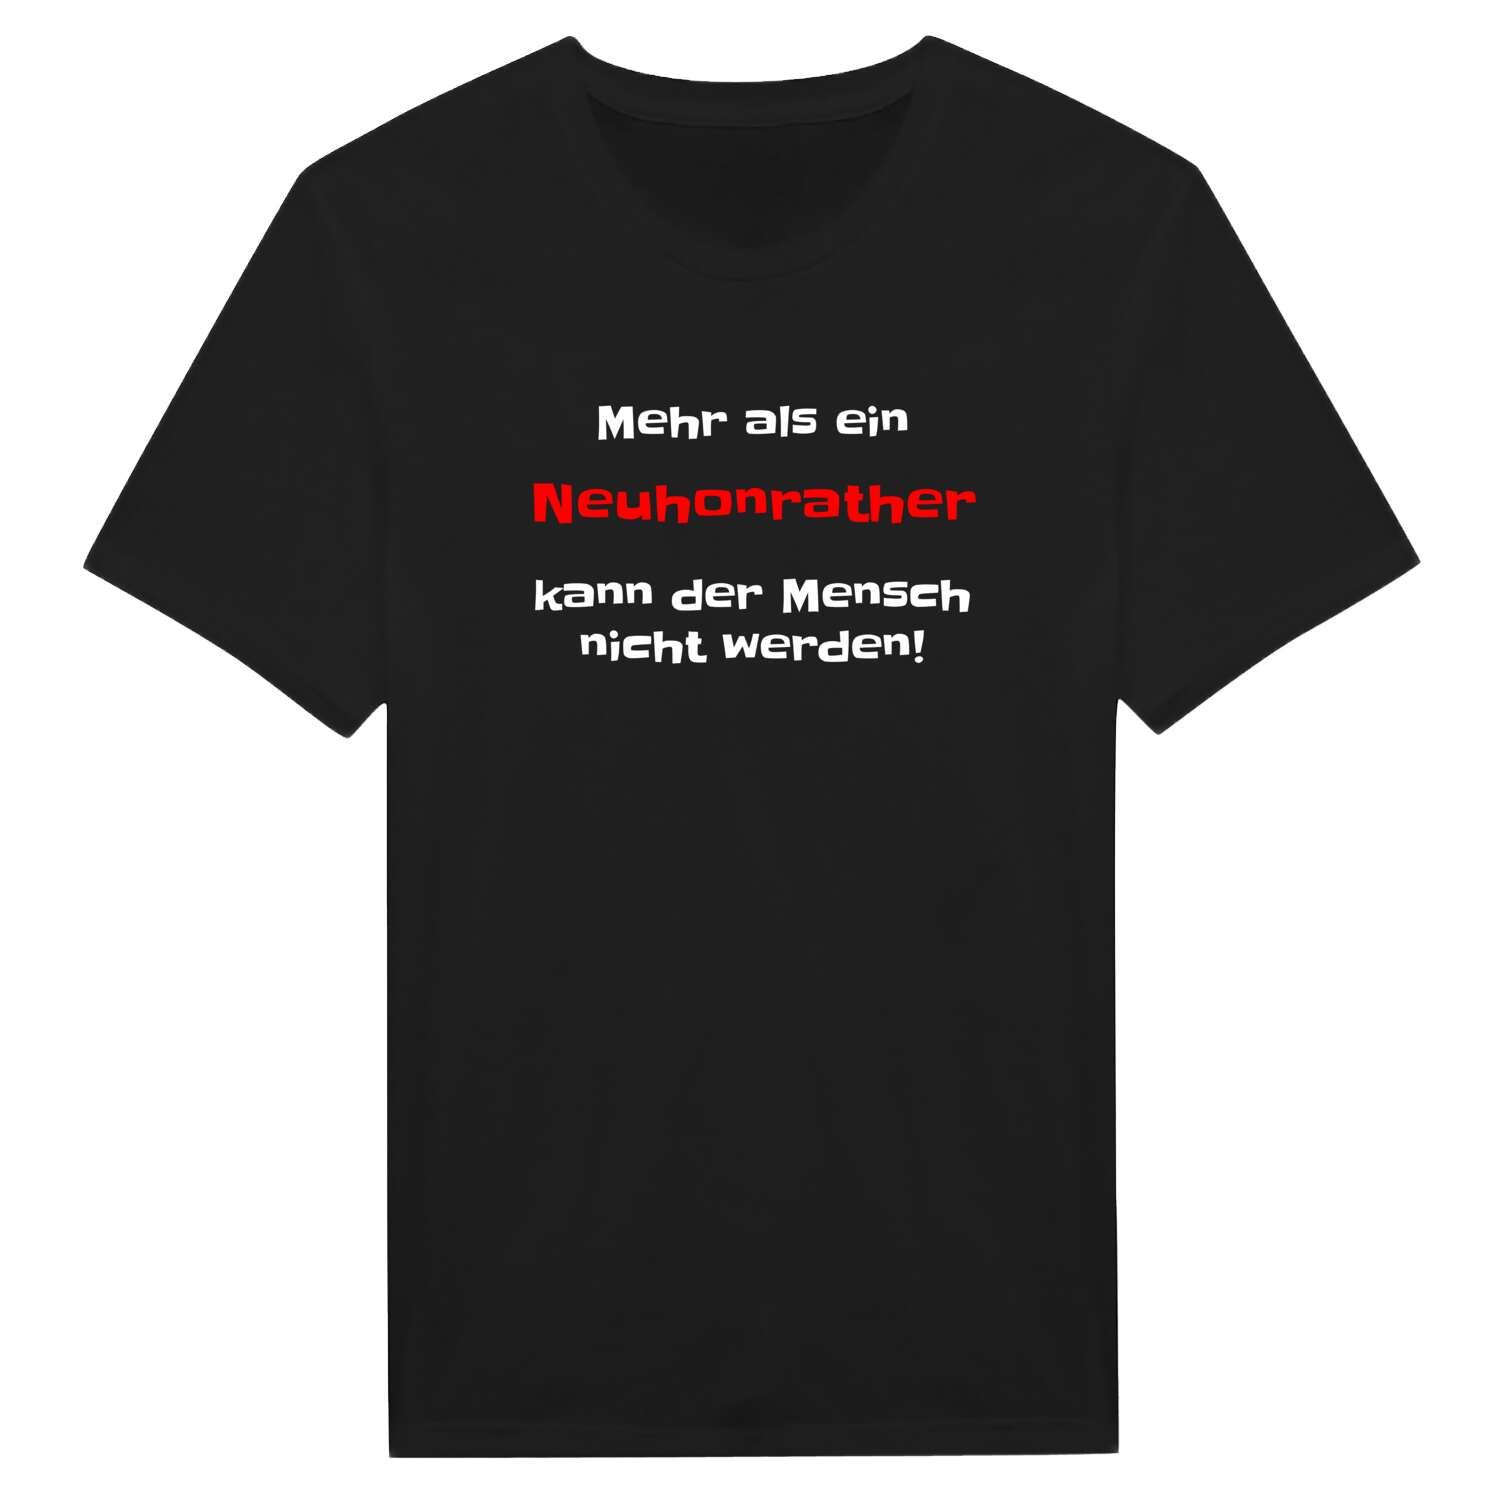 Neuhonrath T-Shirt »Mehr als ein«